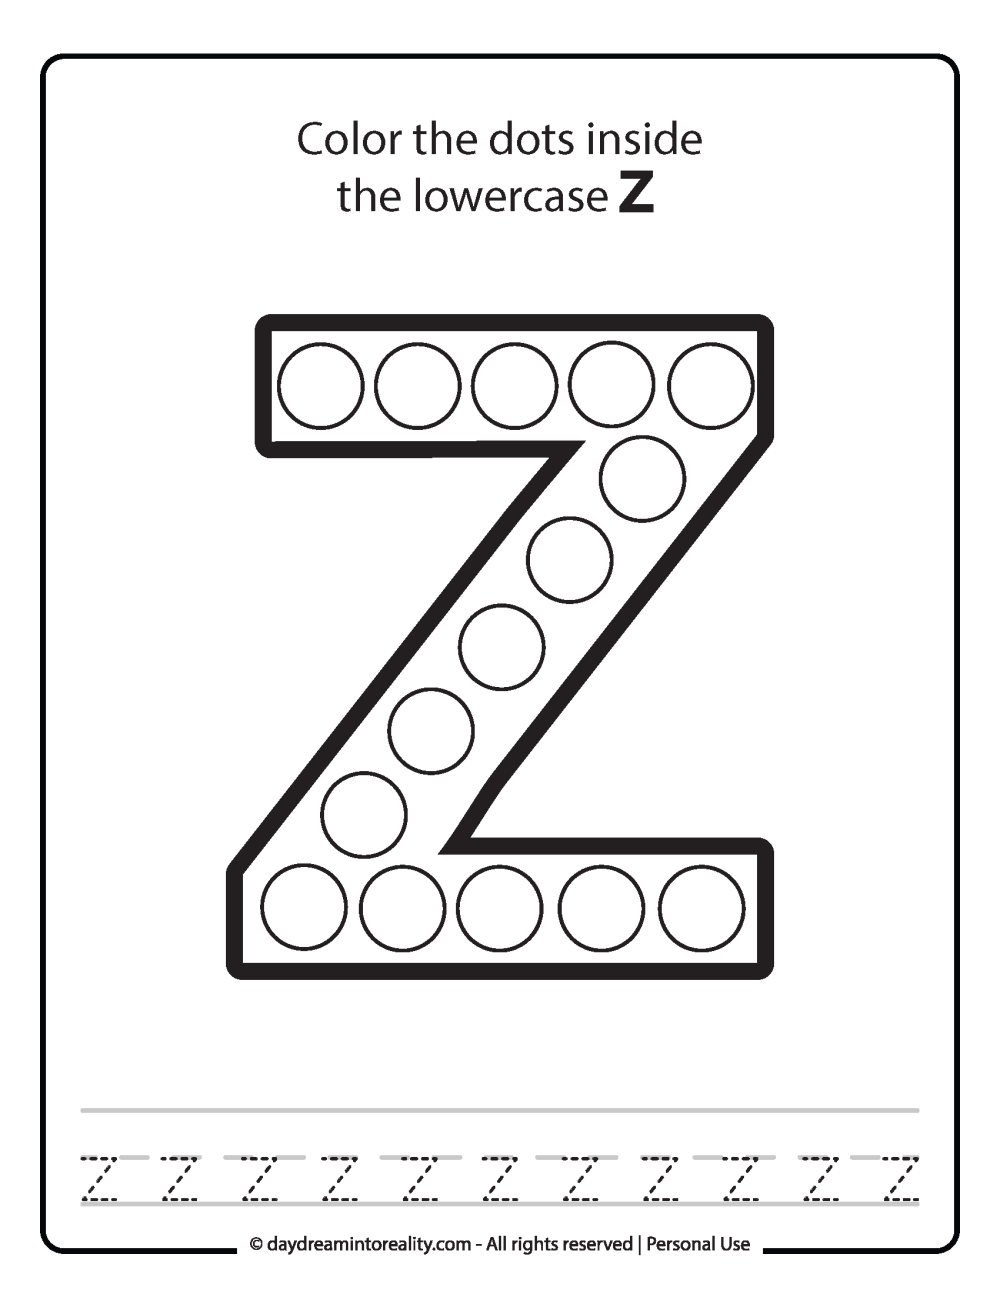 Lowercase "z" Dot Marker Worksheet Free Printable activity for kids (preschool, kindergarten)